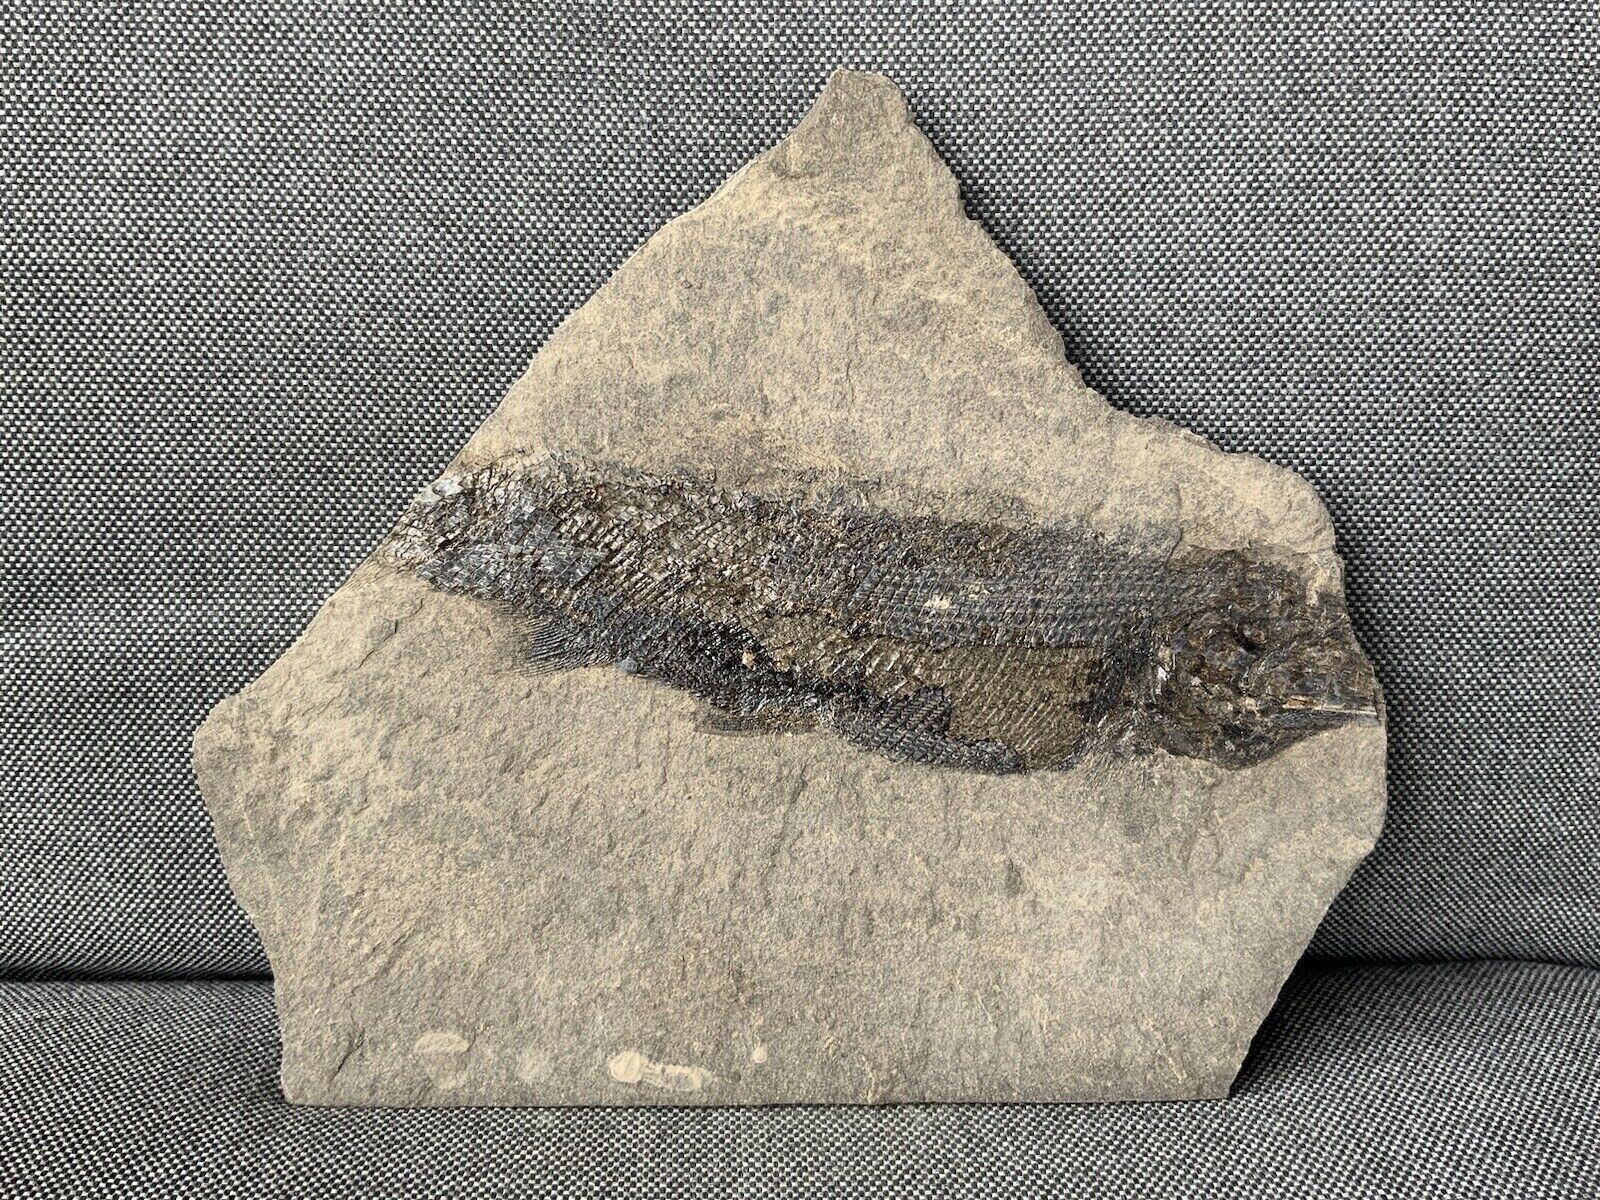 Rare Fossil Fish Specimen Complete, Durham, UK. Palaeoniscus Species, Permian.